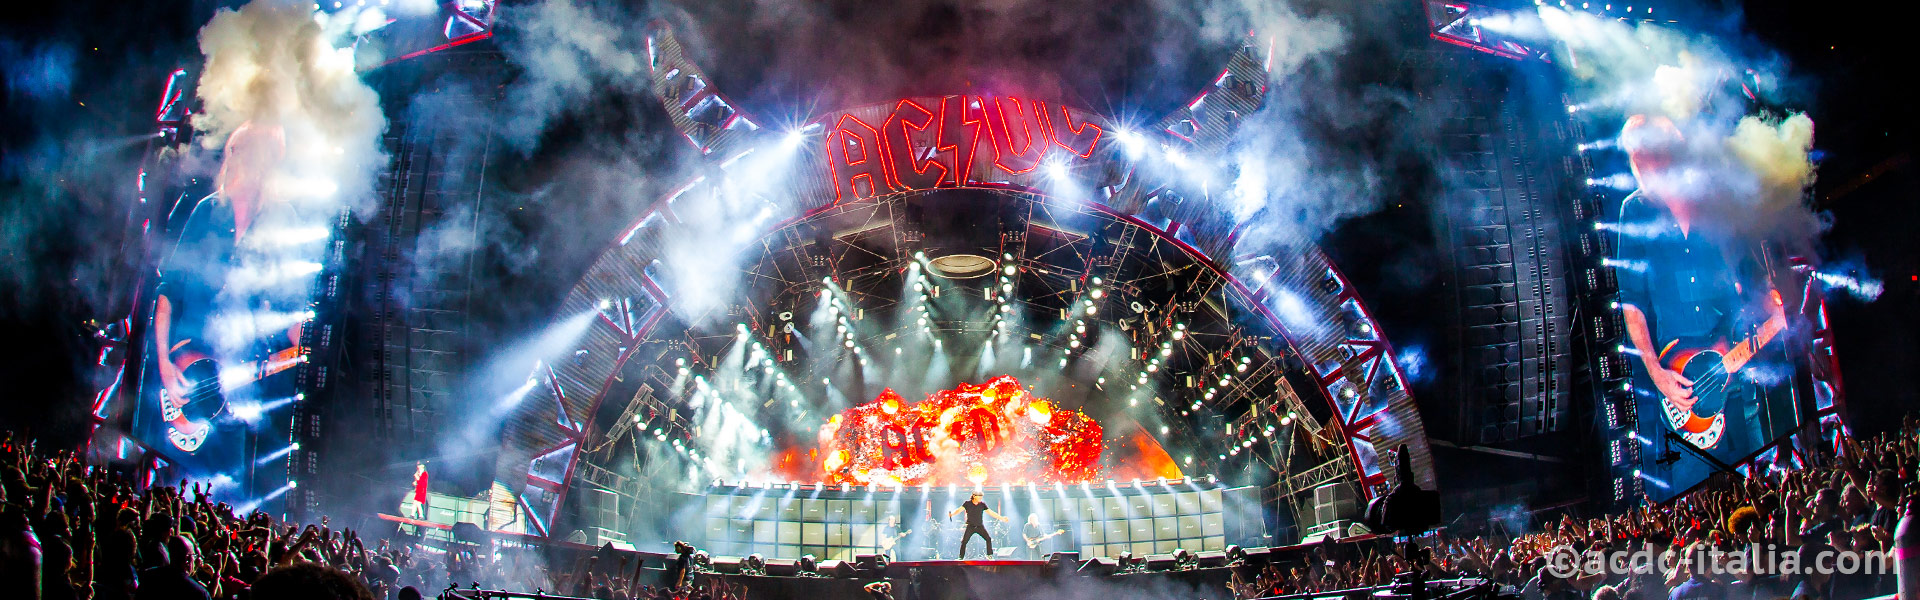 Brian Johnson conferma ad AC/DC Italia nuovo album nel 2014 e tour nel 2015